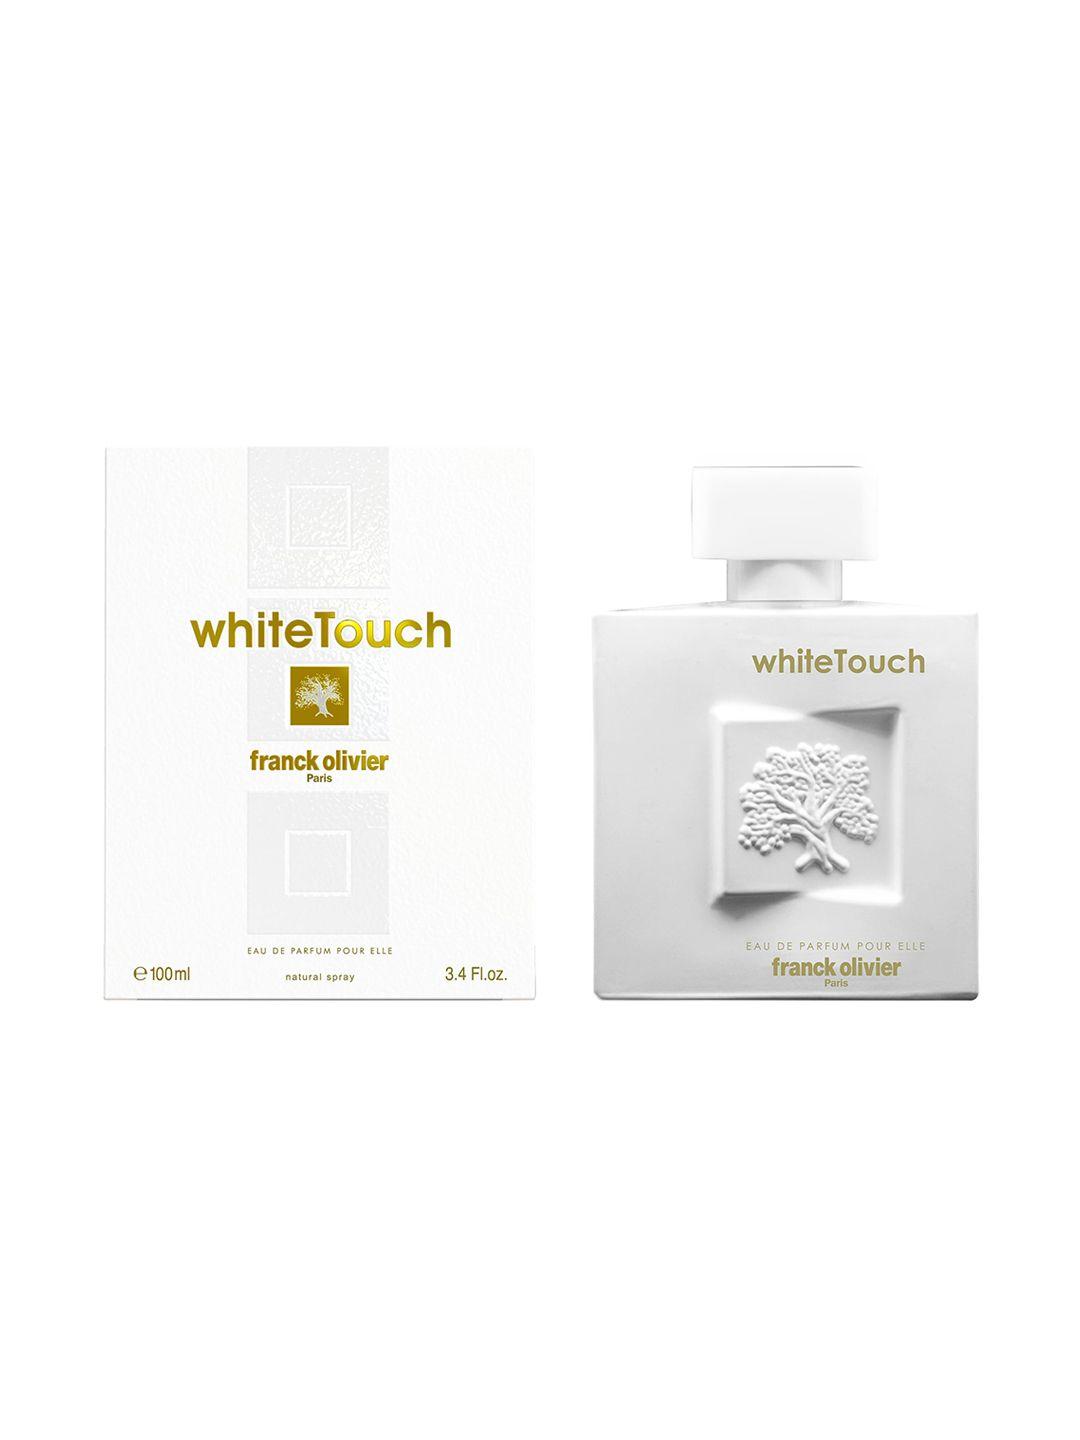 franck olivier woman white touch eau de parfum spray-100ml